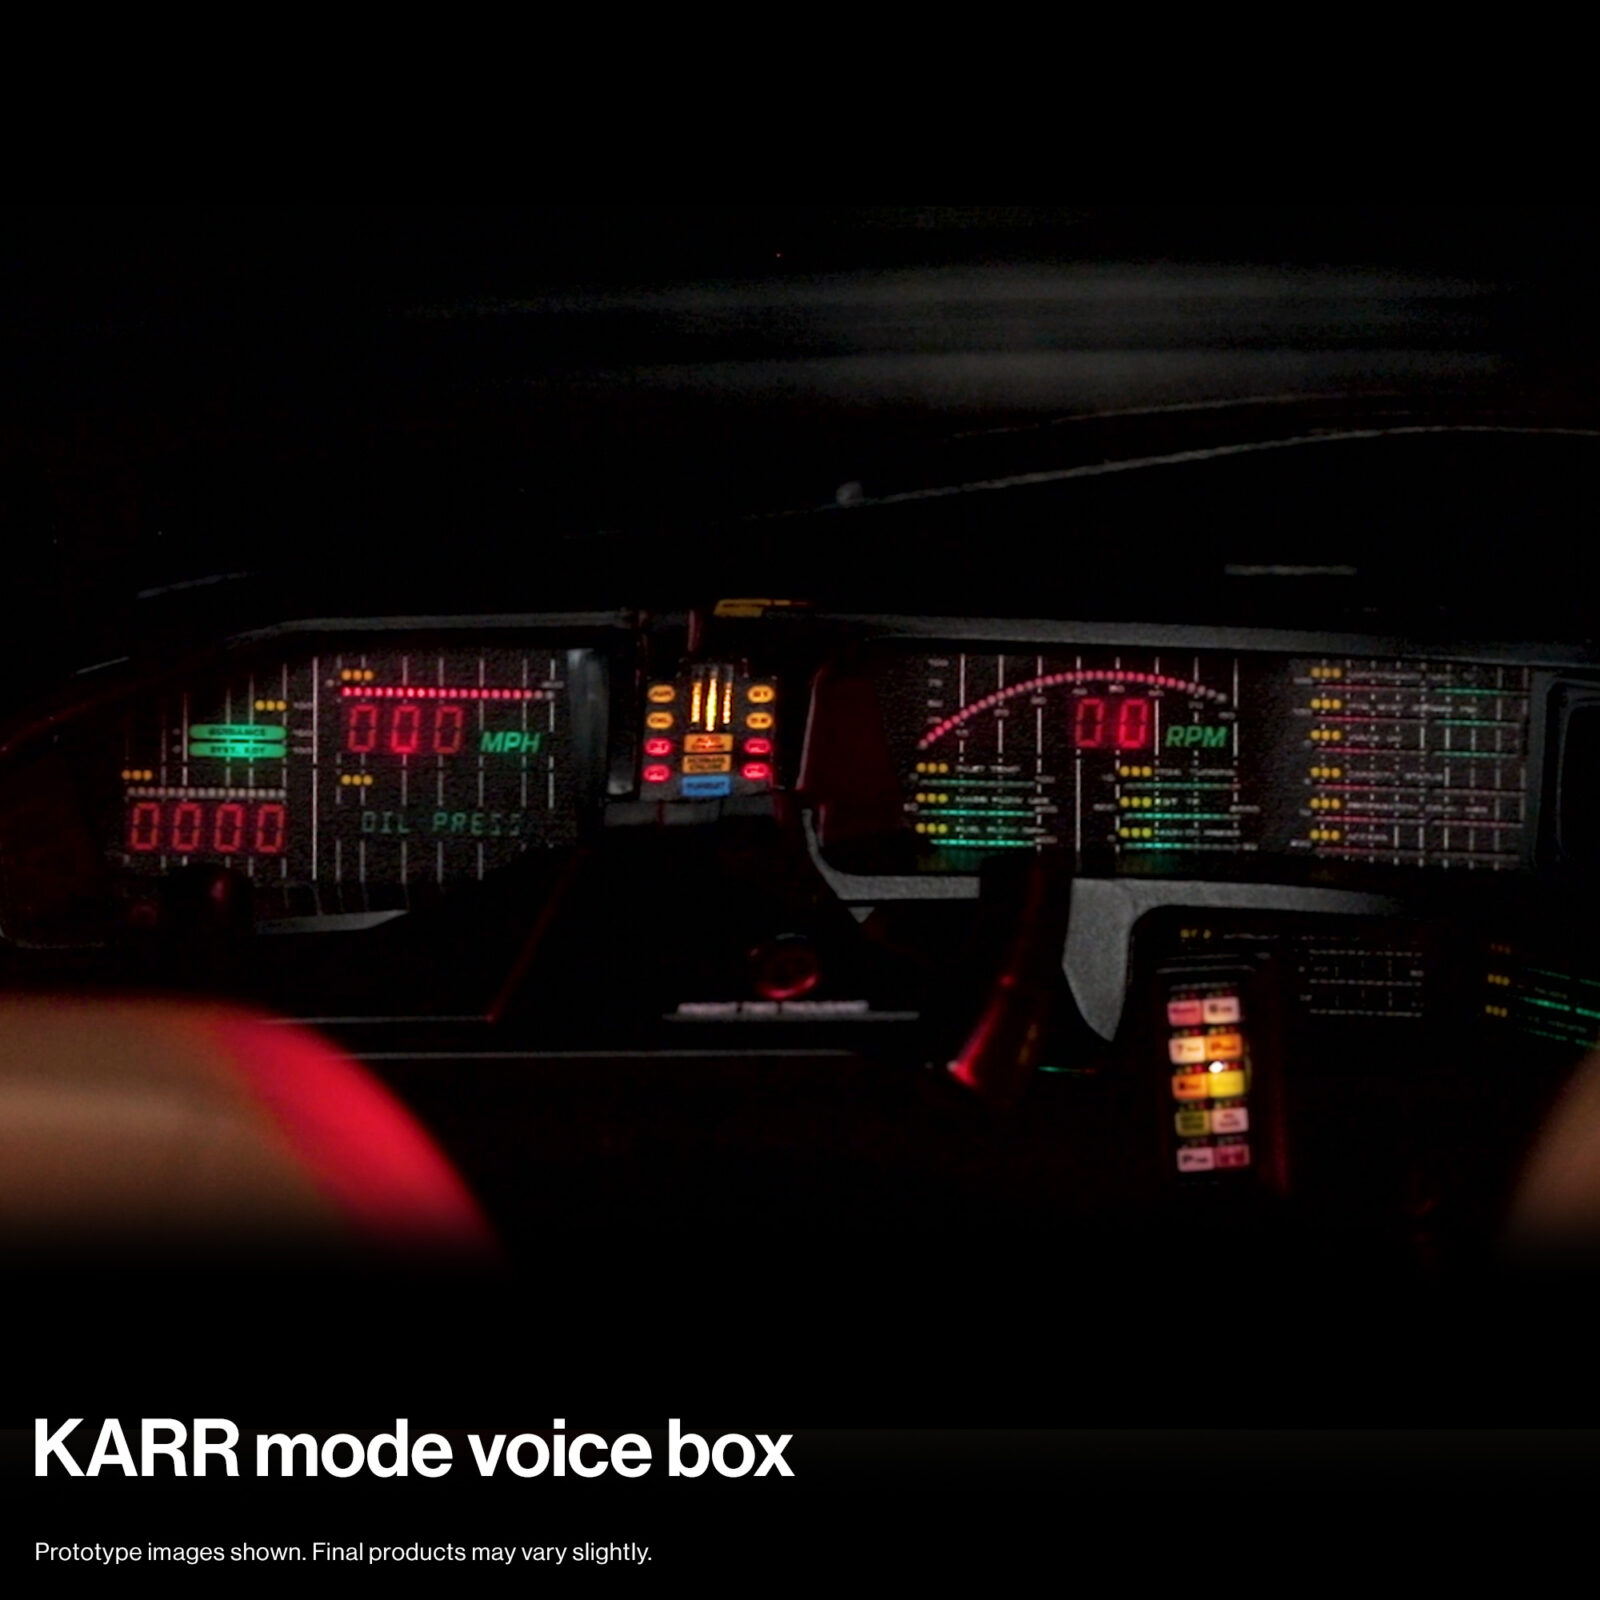 KARR mode voice box for KITT dashboard